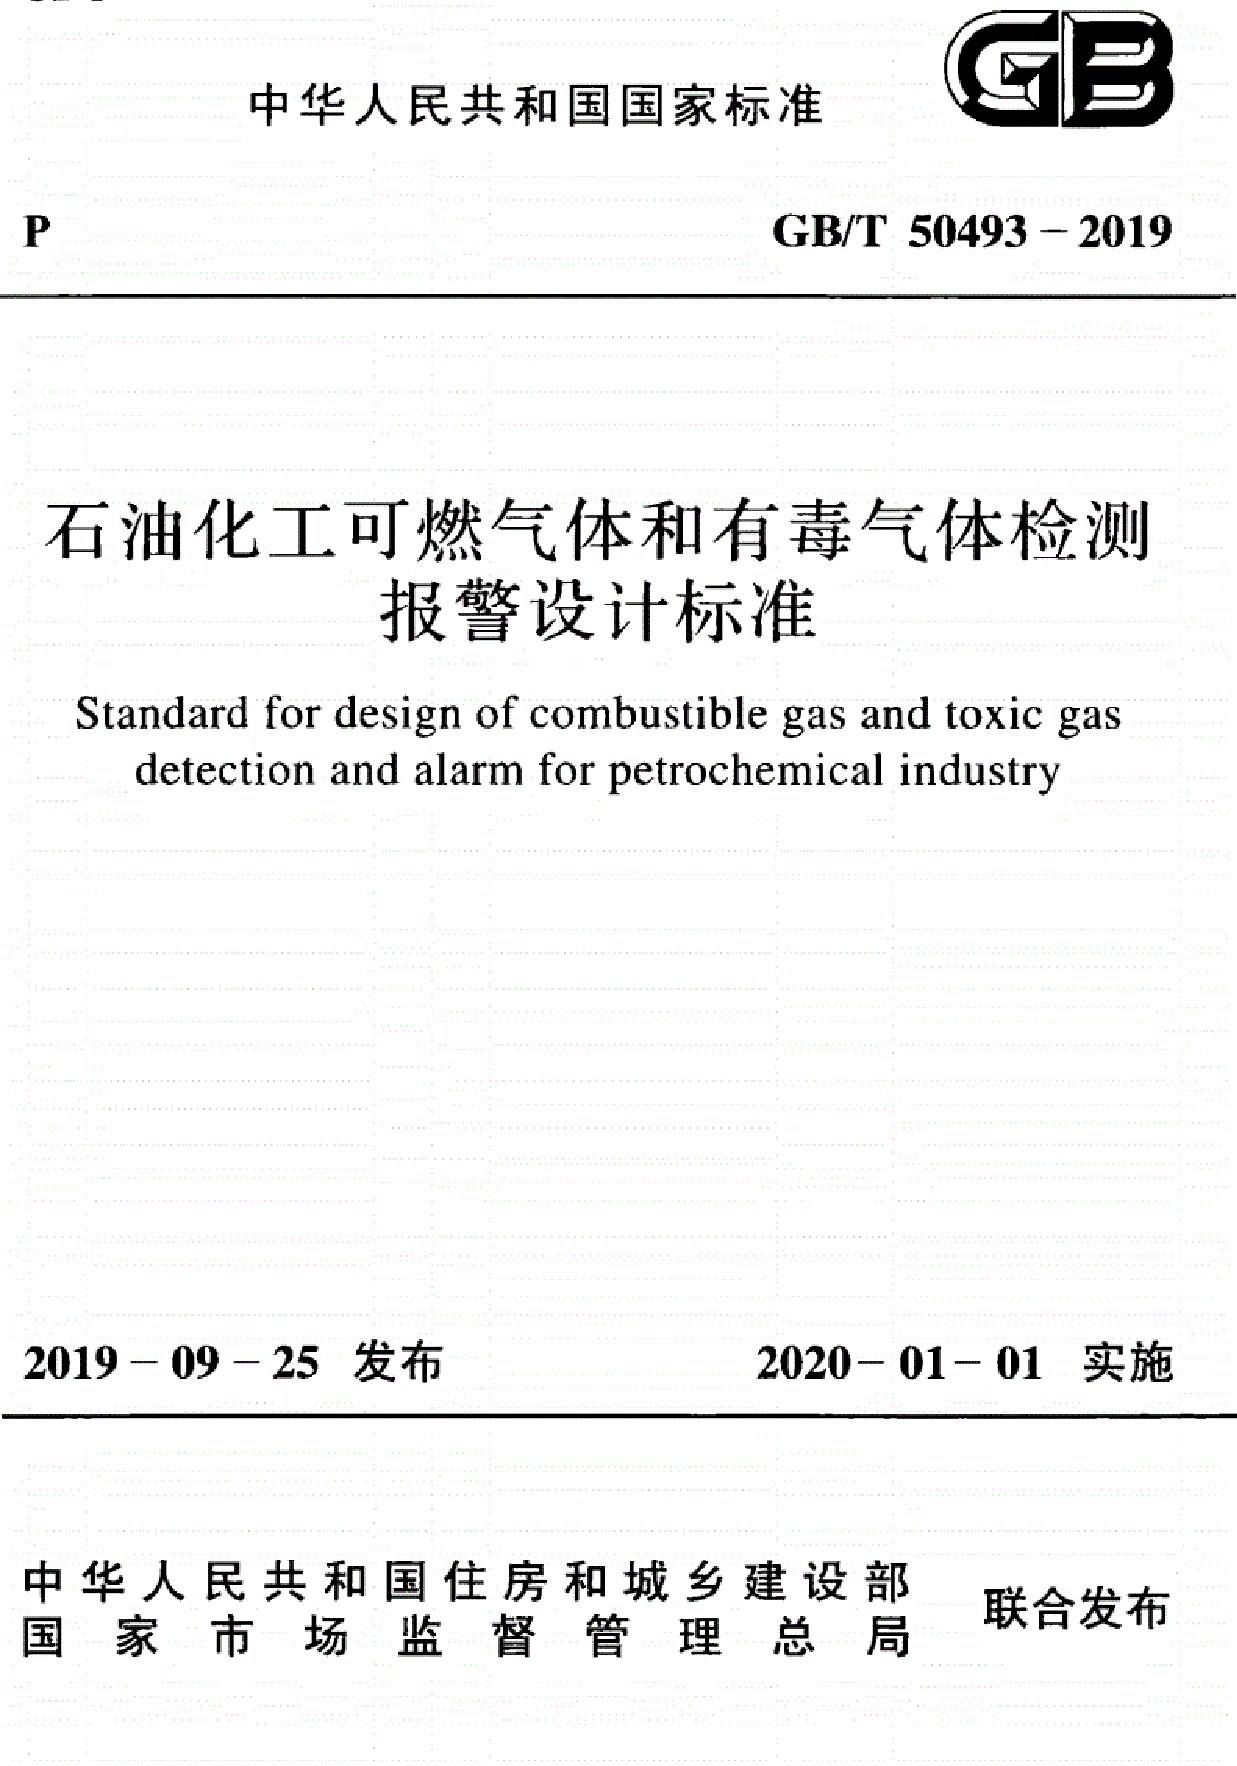 GB/T 50493 石油化工可燃气体和有毒气体检测报警设计标准